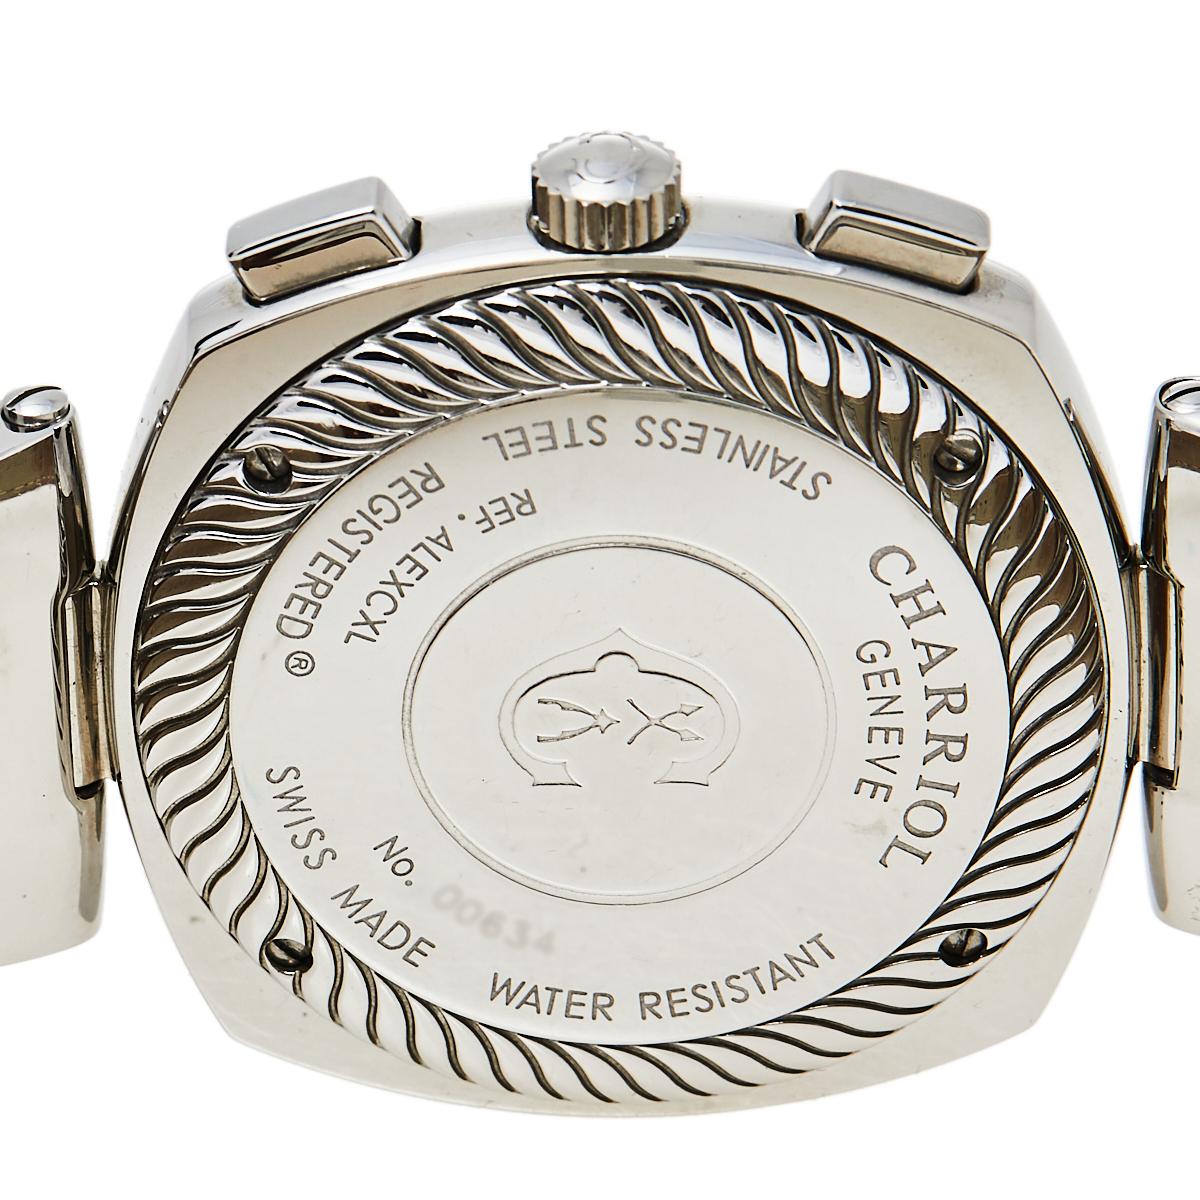 Charriol Silver Stainless Steel Alexander C REF.ALEXCXL Men's Wristwatch 40 mm 1